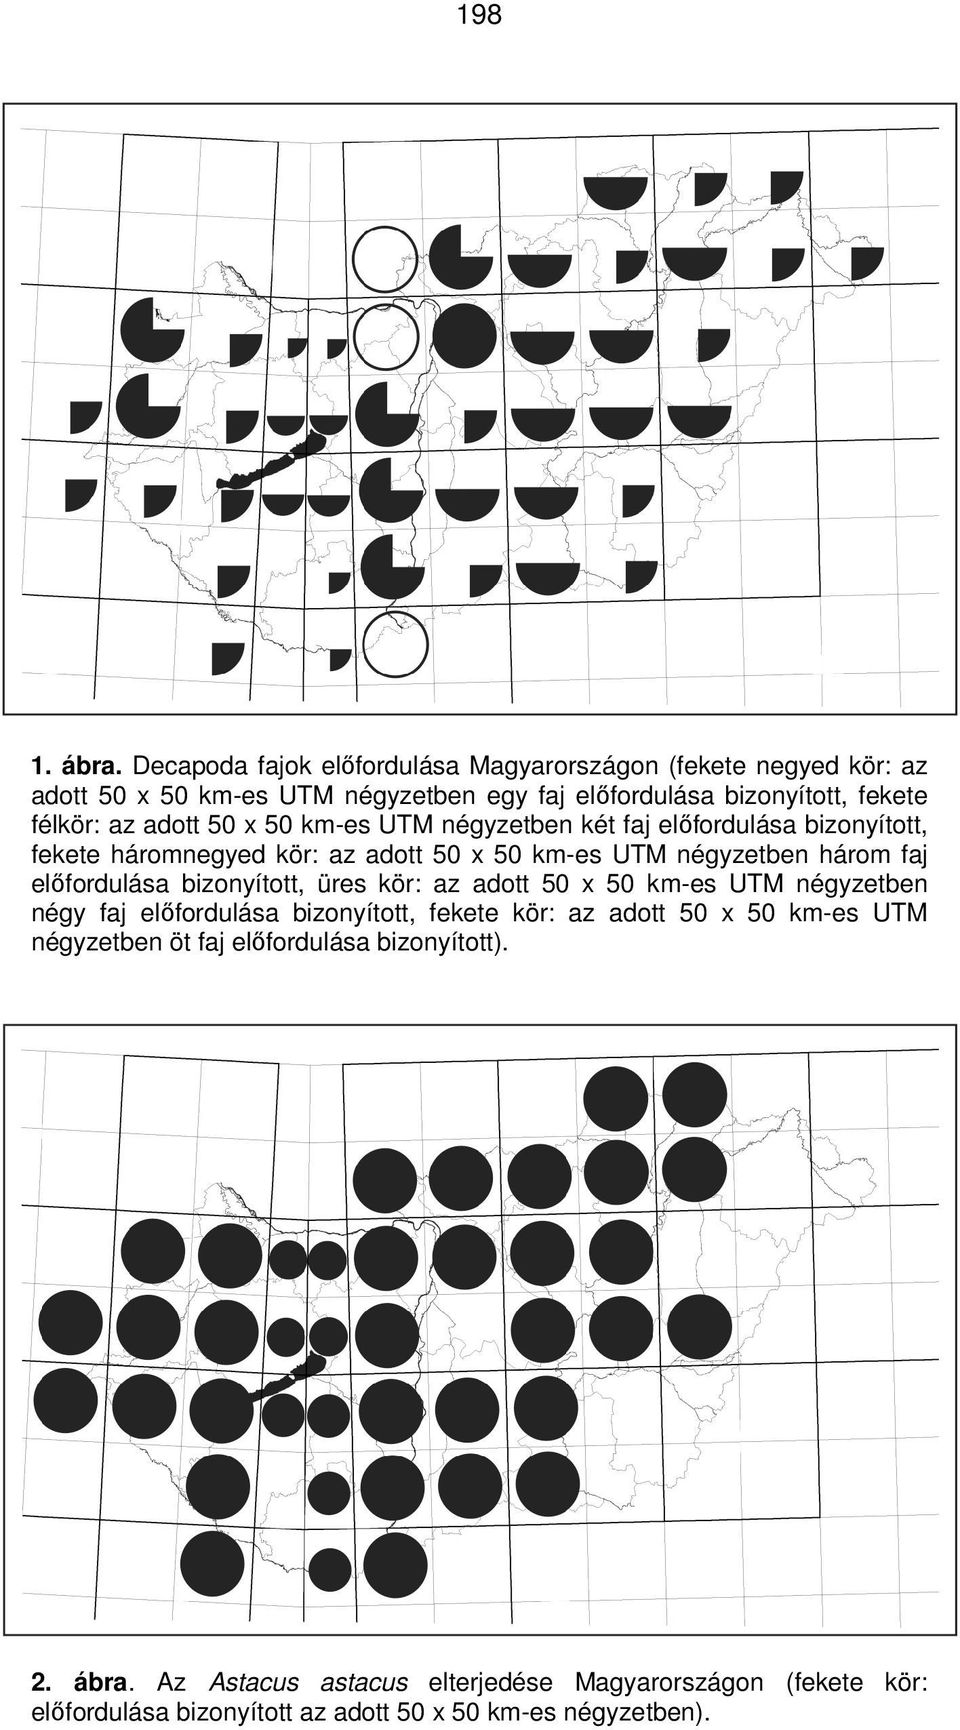 adott 50 x 50 km-es UTM négyzetben két faj elıfordulása bizonyított, fekete háromnegyed kör: az adott 50 x 50 km-es UTM négyzetben három faj elıfordulása